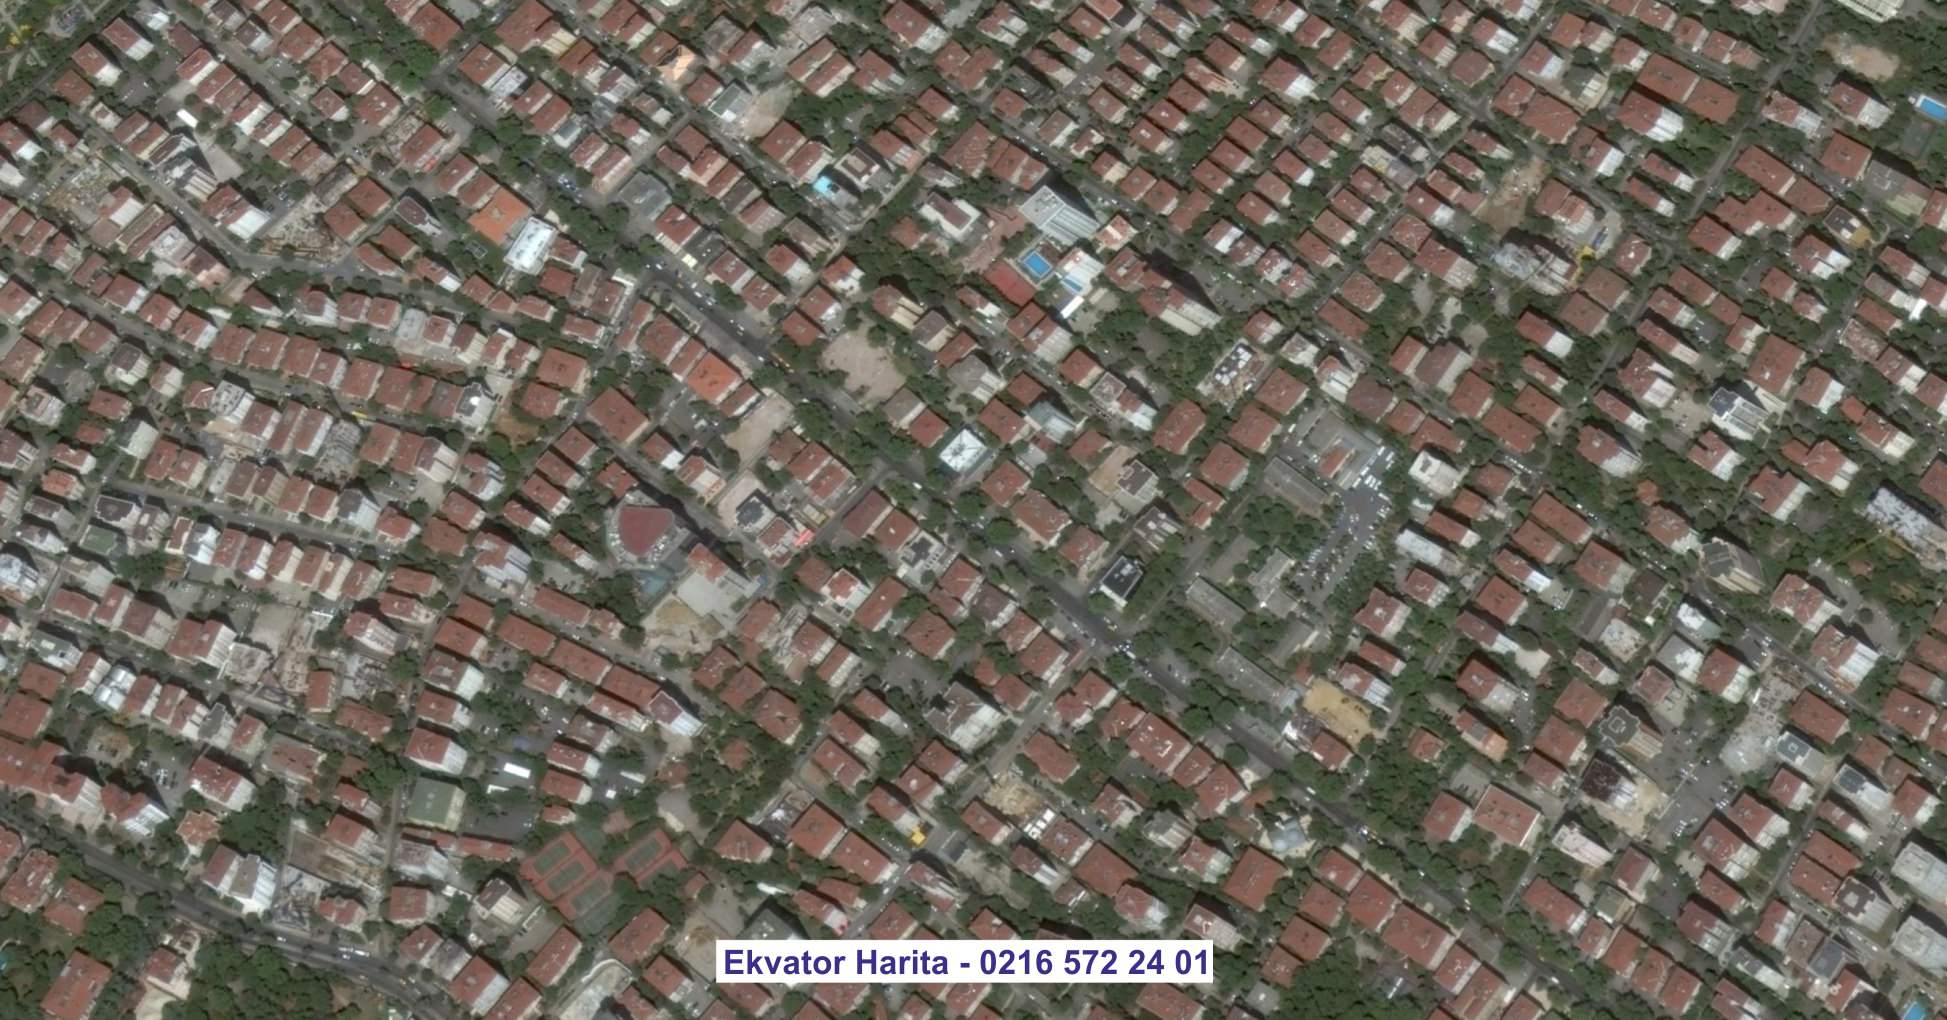 Samarra Uydu Görüntüsü Örnek Fotoğrafı